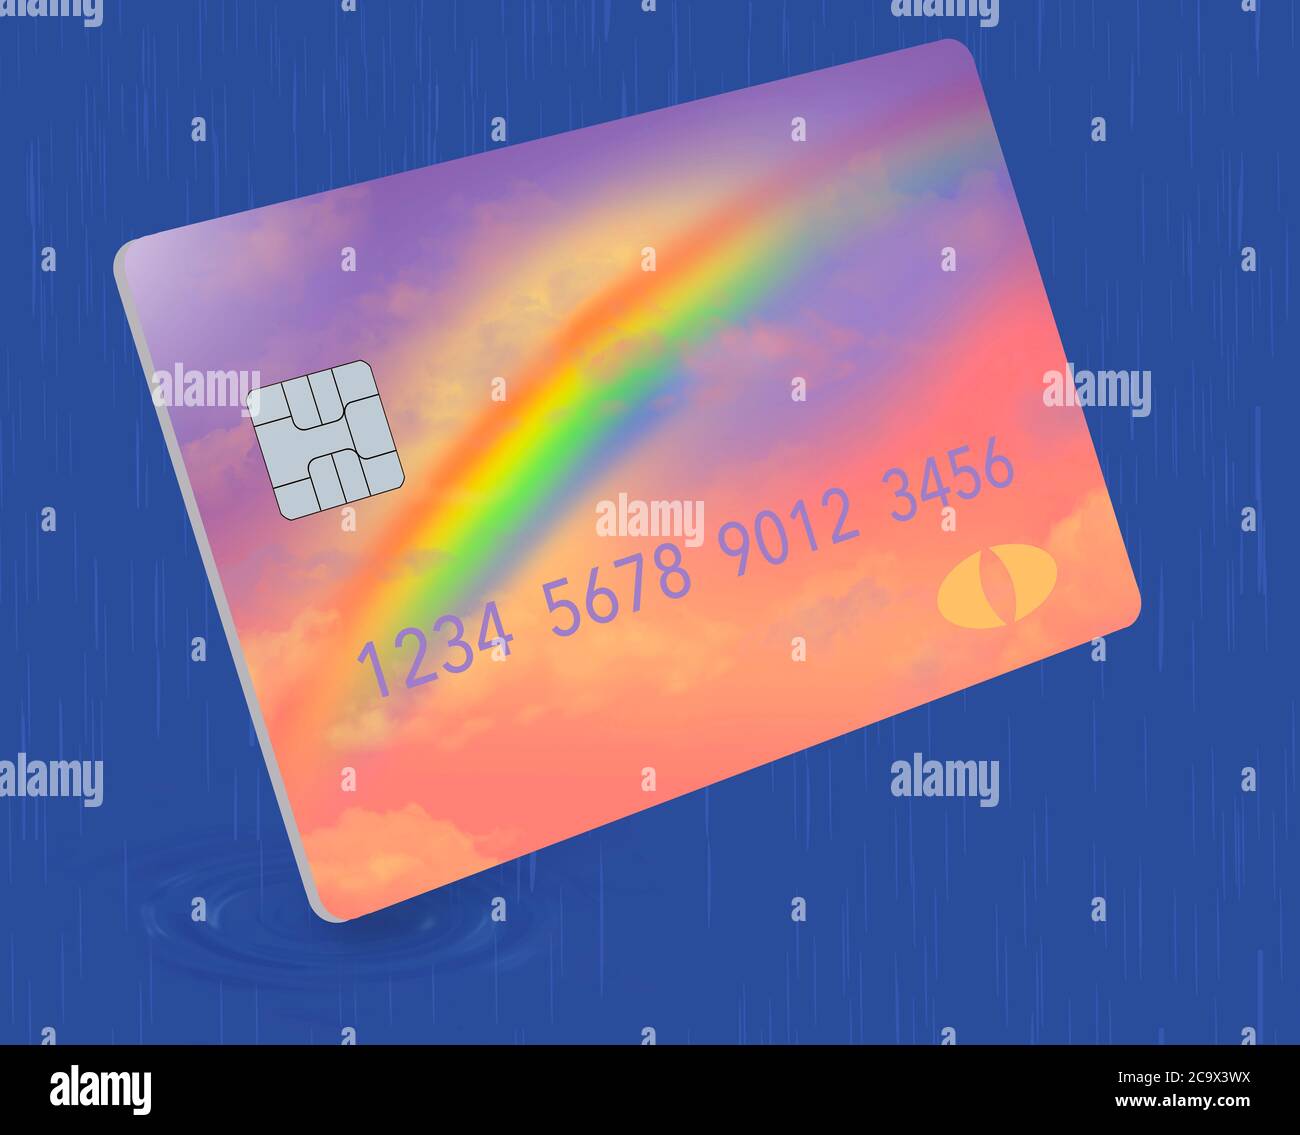 Ecco una carta di credito che ha un design arcobaleno e colori e deve essere utilizzato in un giorno piovoso. È per le emergenze finanziarie. Foto Stock